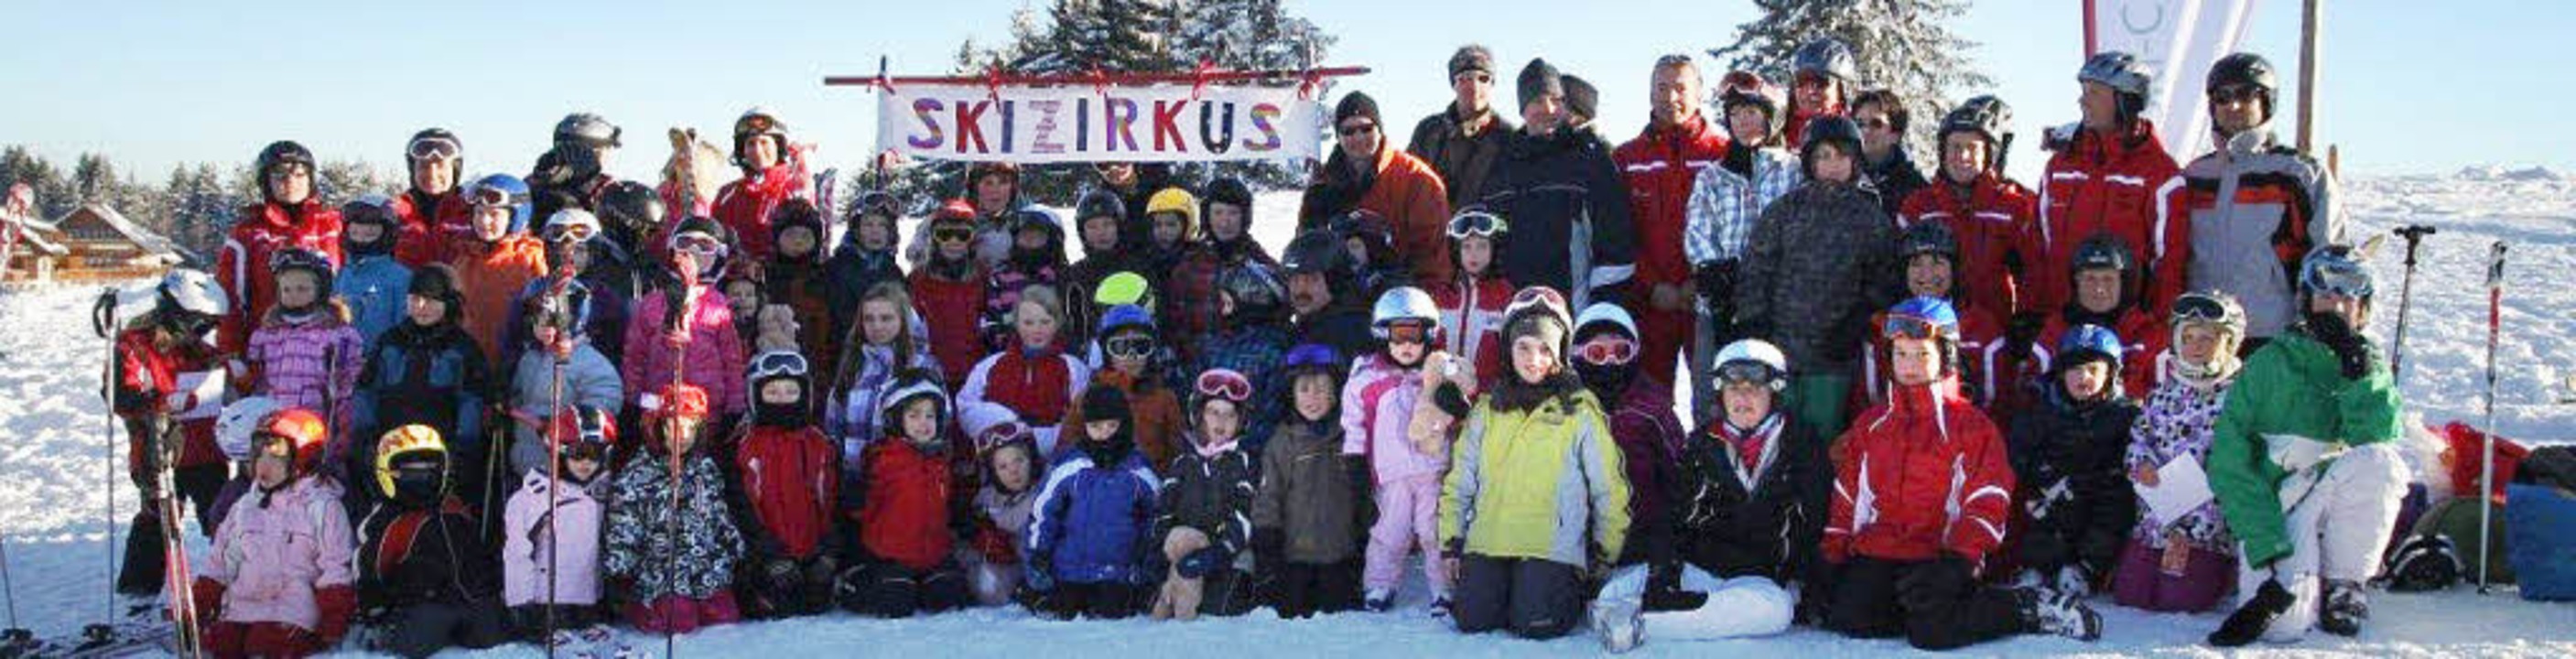 Die Teilnehmer der Ski- und Snowboardk...auf dem Feldberg ein ideales Gelände.   | Foto: privat